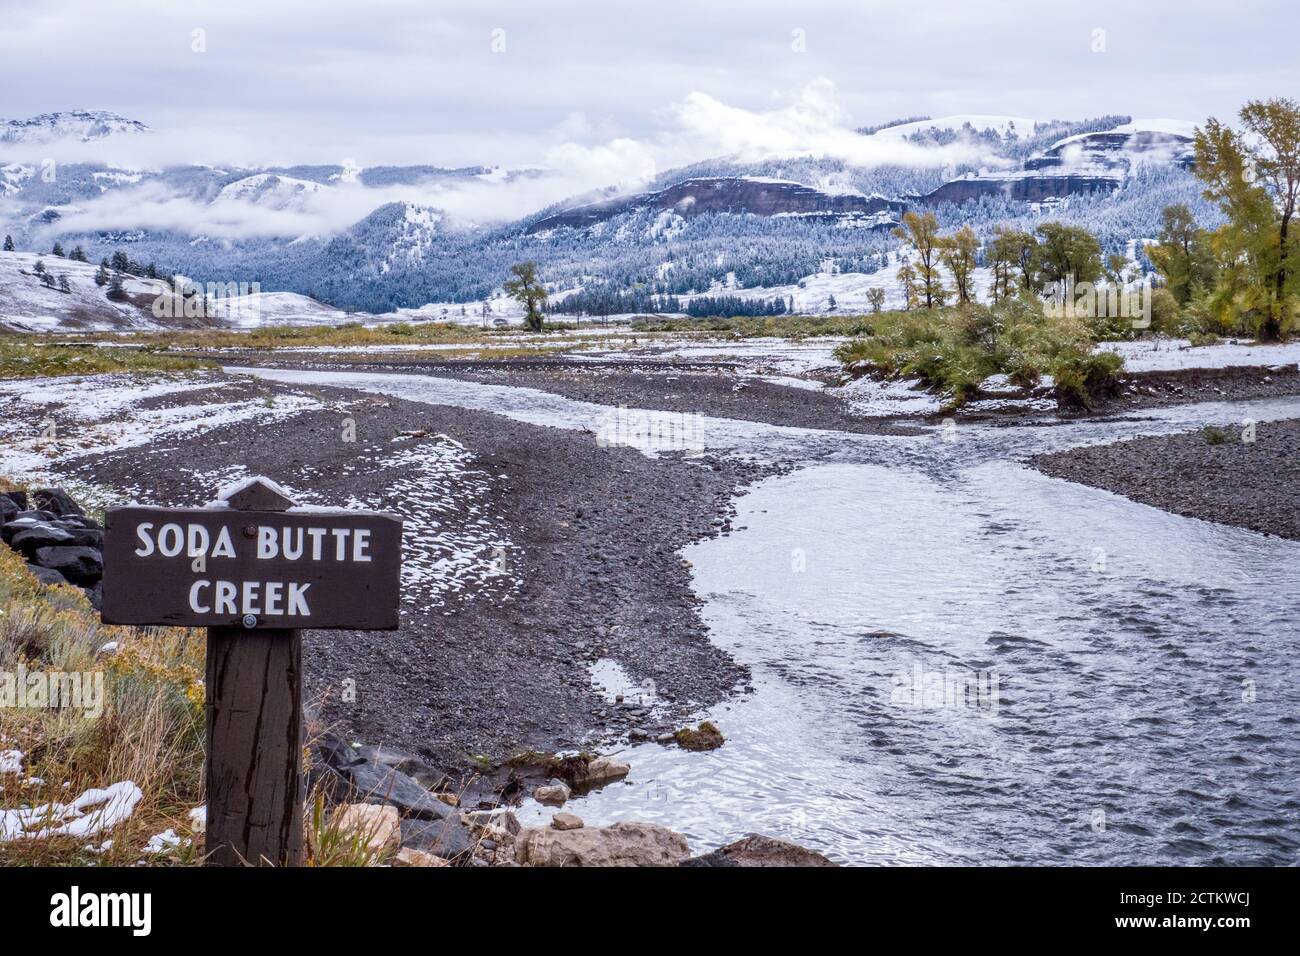 Parco nazionale di Yellowstone, Wyoming, Stati Uniti. Soda Butte Creek con cartello, nella Lamar Valley all'inizio dell'autunno. Foto Stock